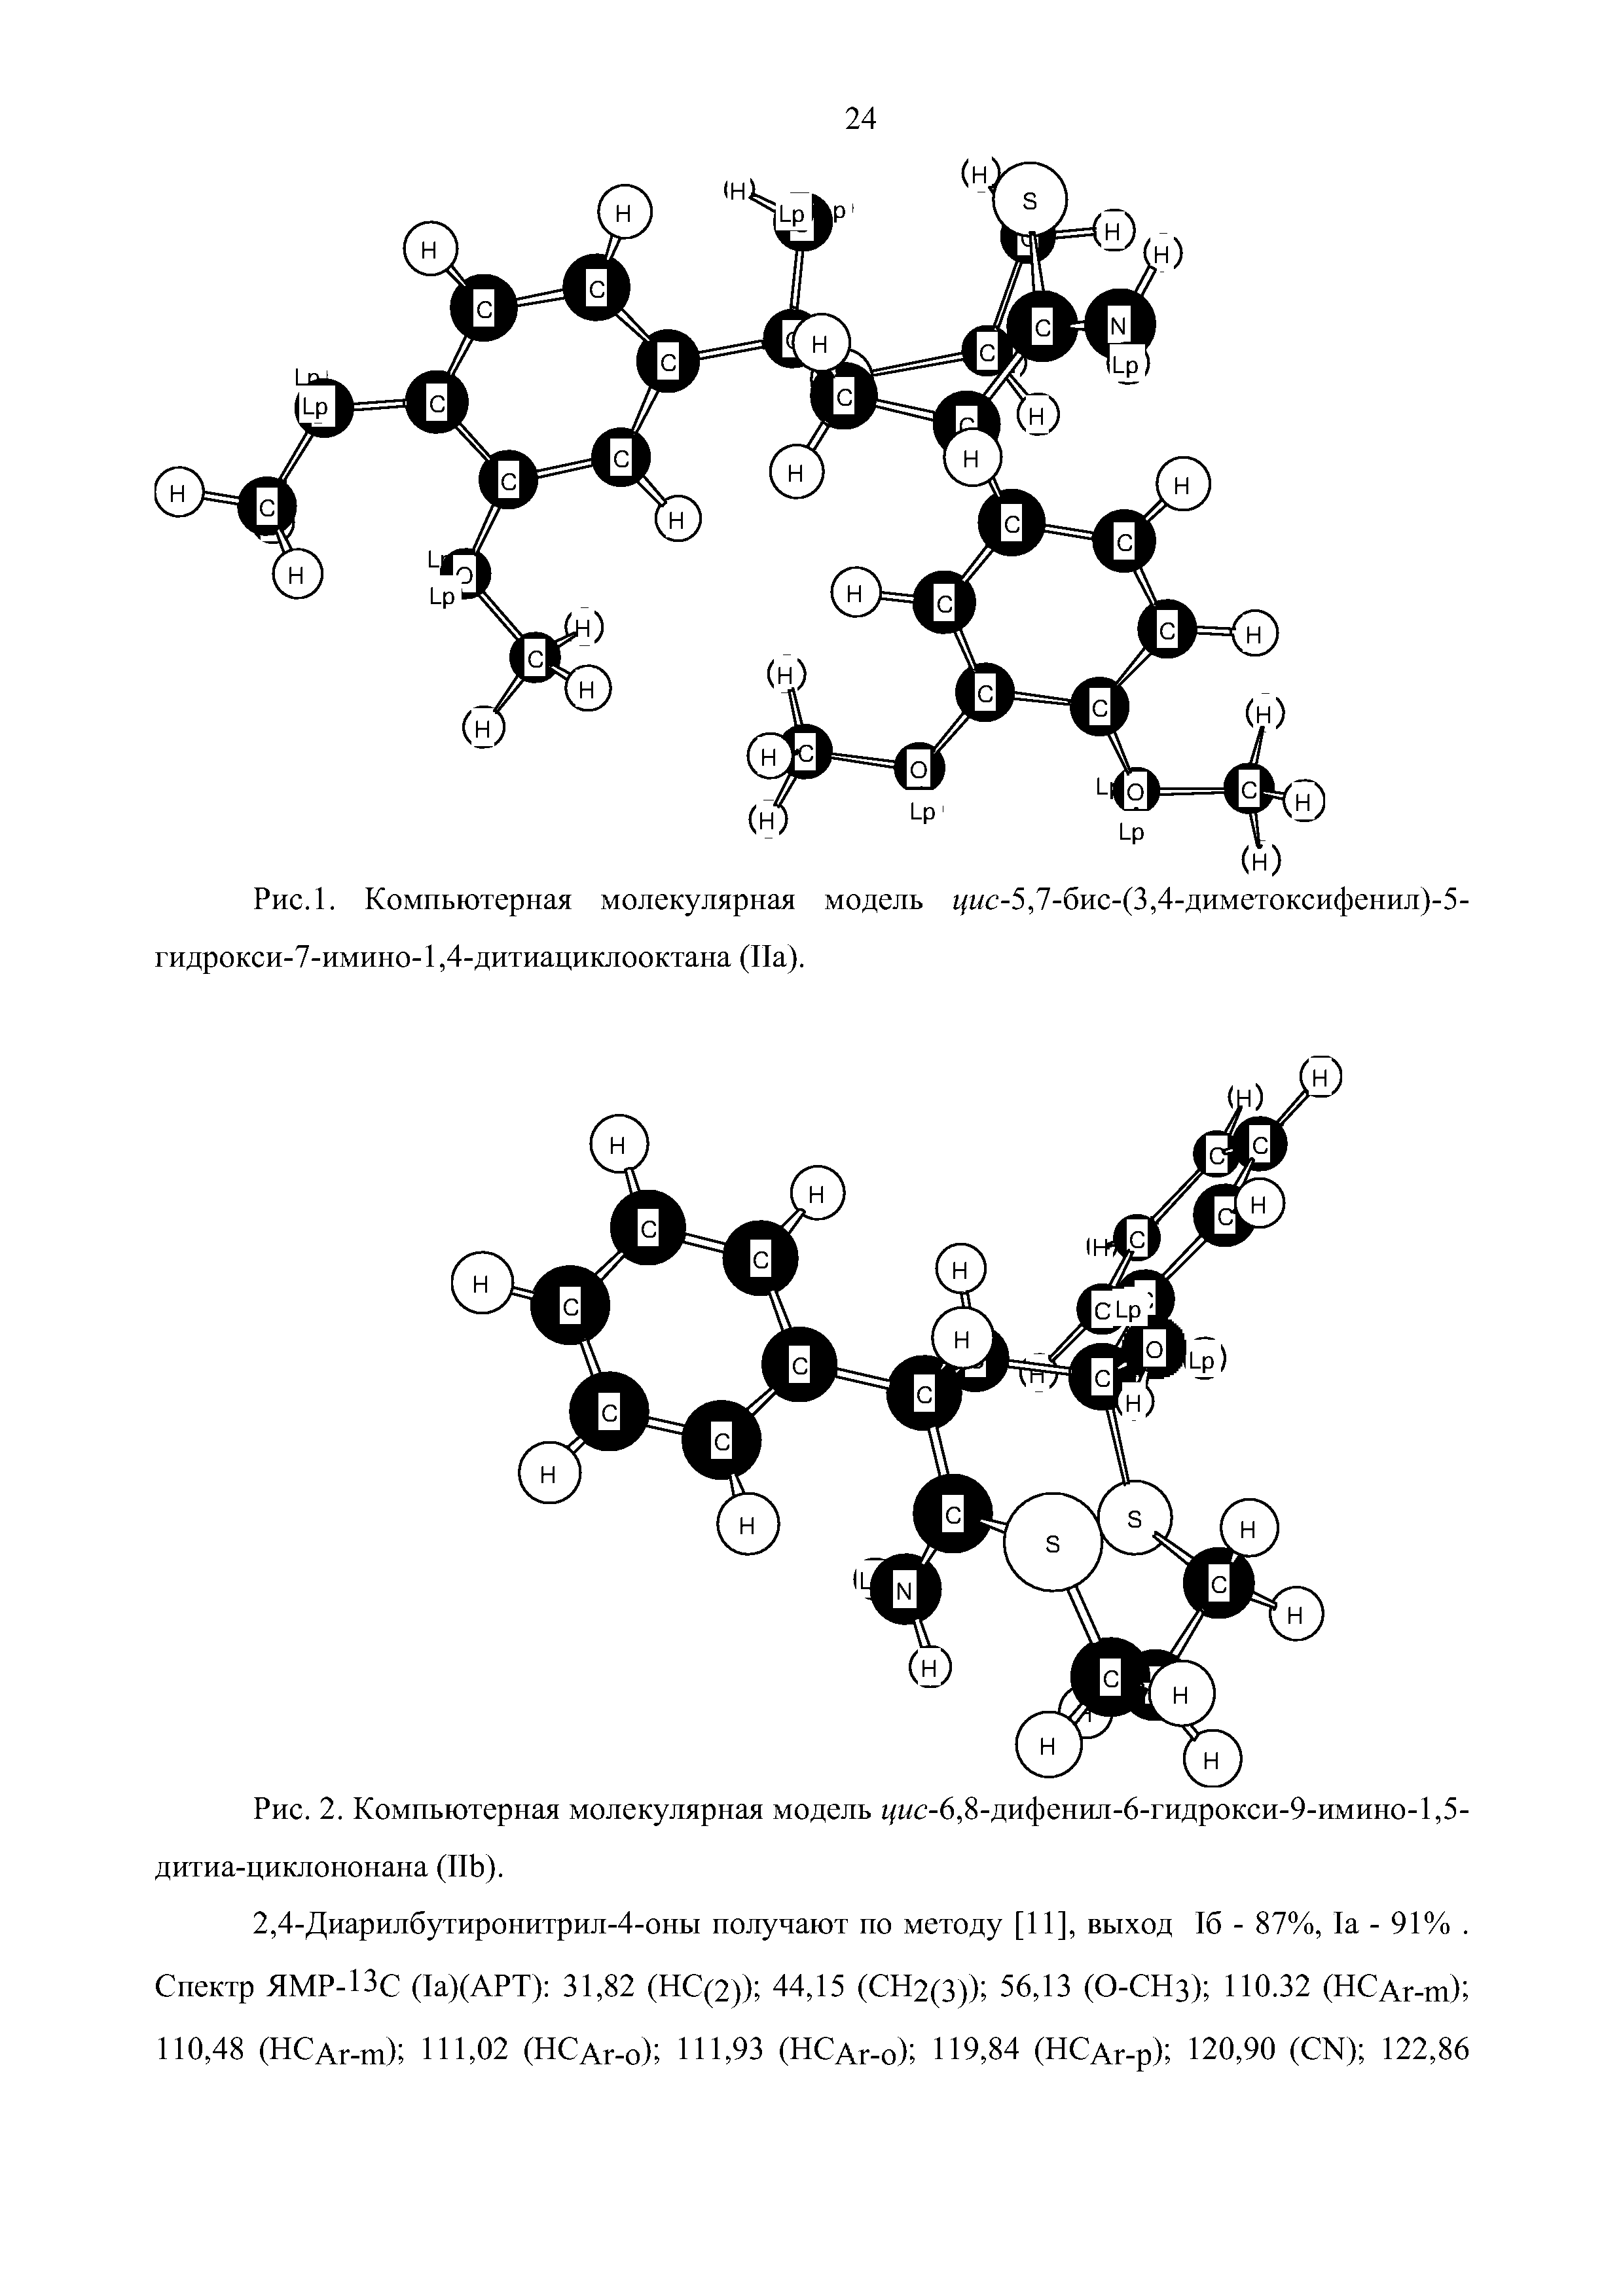 Рис. 2. Компьютерная молекулярная модель г/пс-6,8-дифенил-6-гидрокси-9-имино-1,5-дитиа-циклононана (ПЬ).